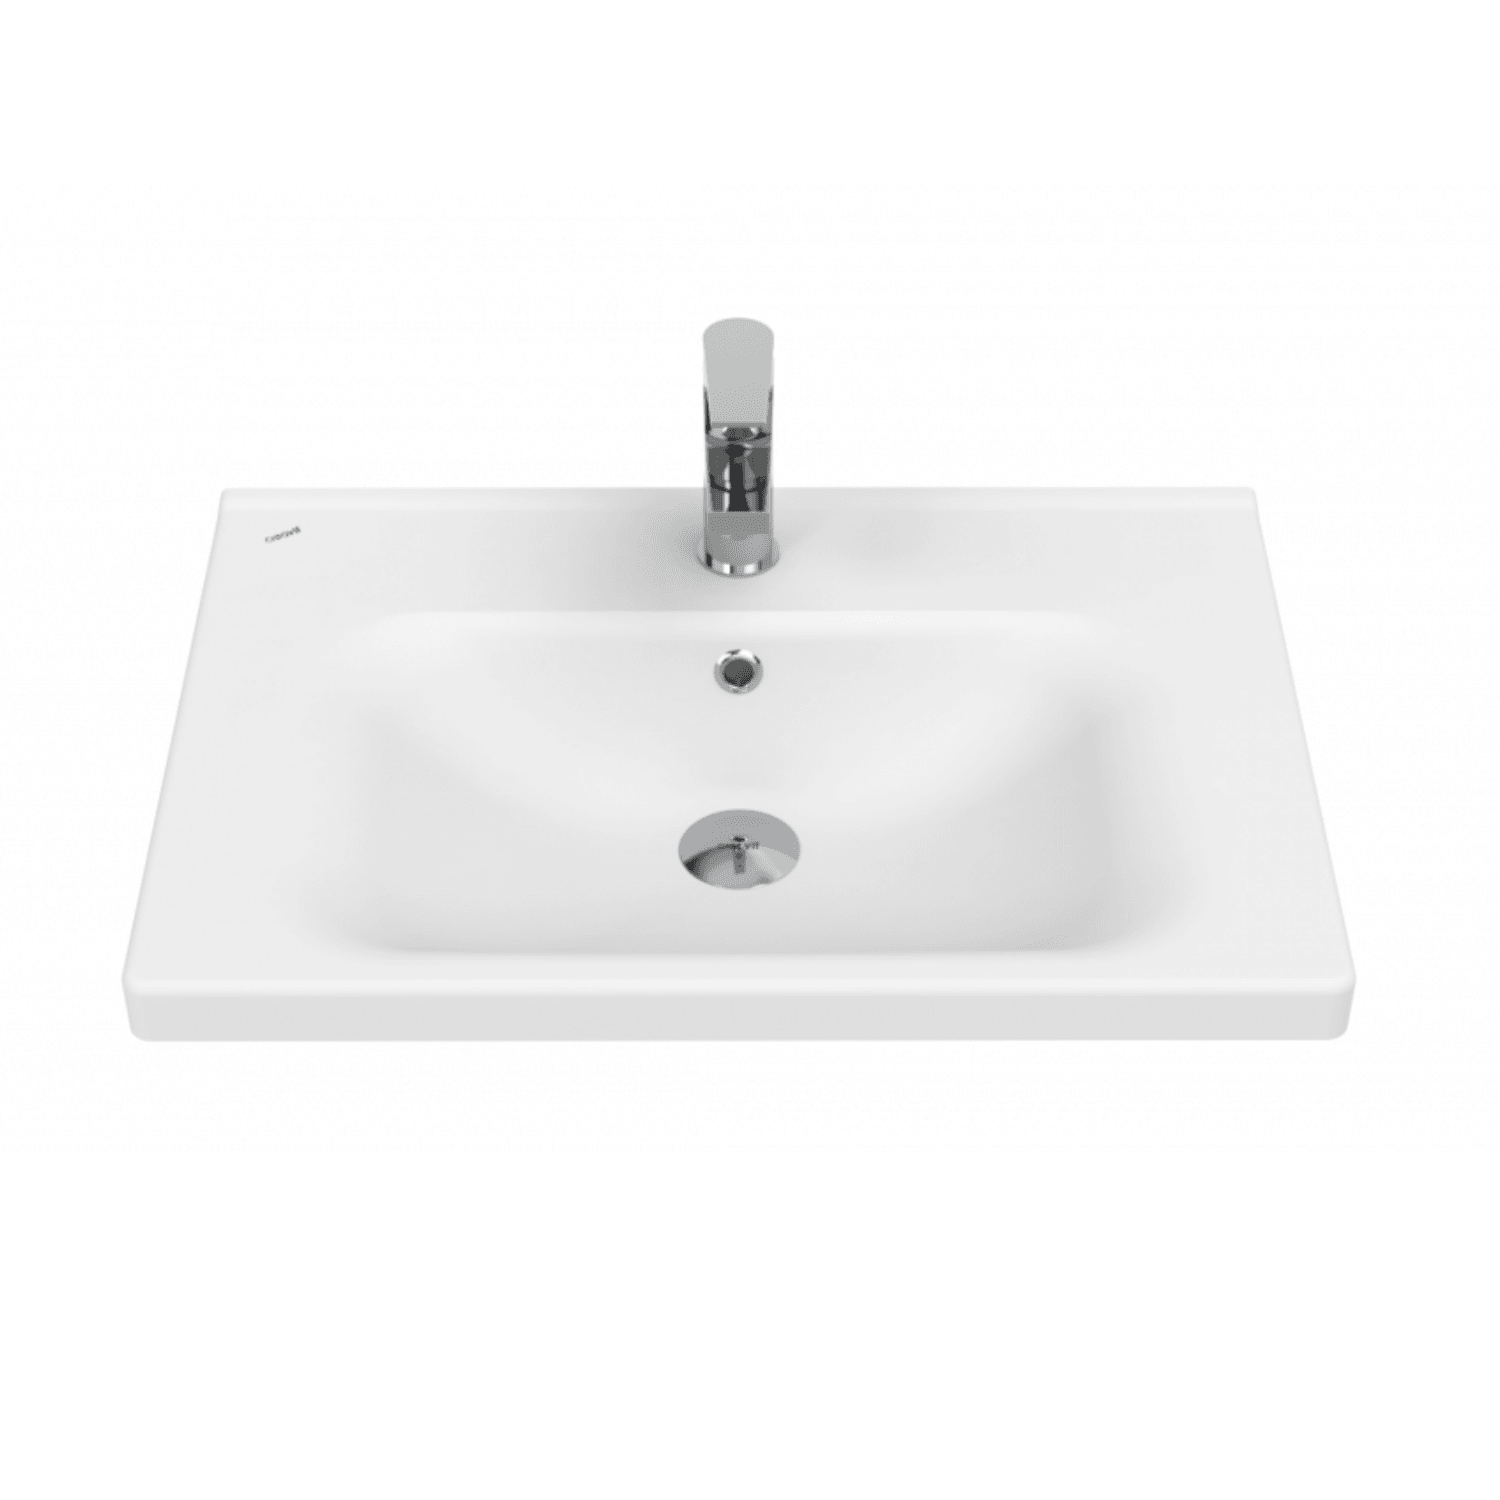 Eksen Etajerli Lavabo 65 cm Beyaz - Creavit | Banyo Bu Tarafta